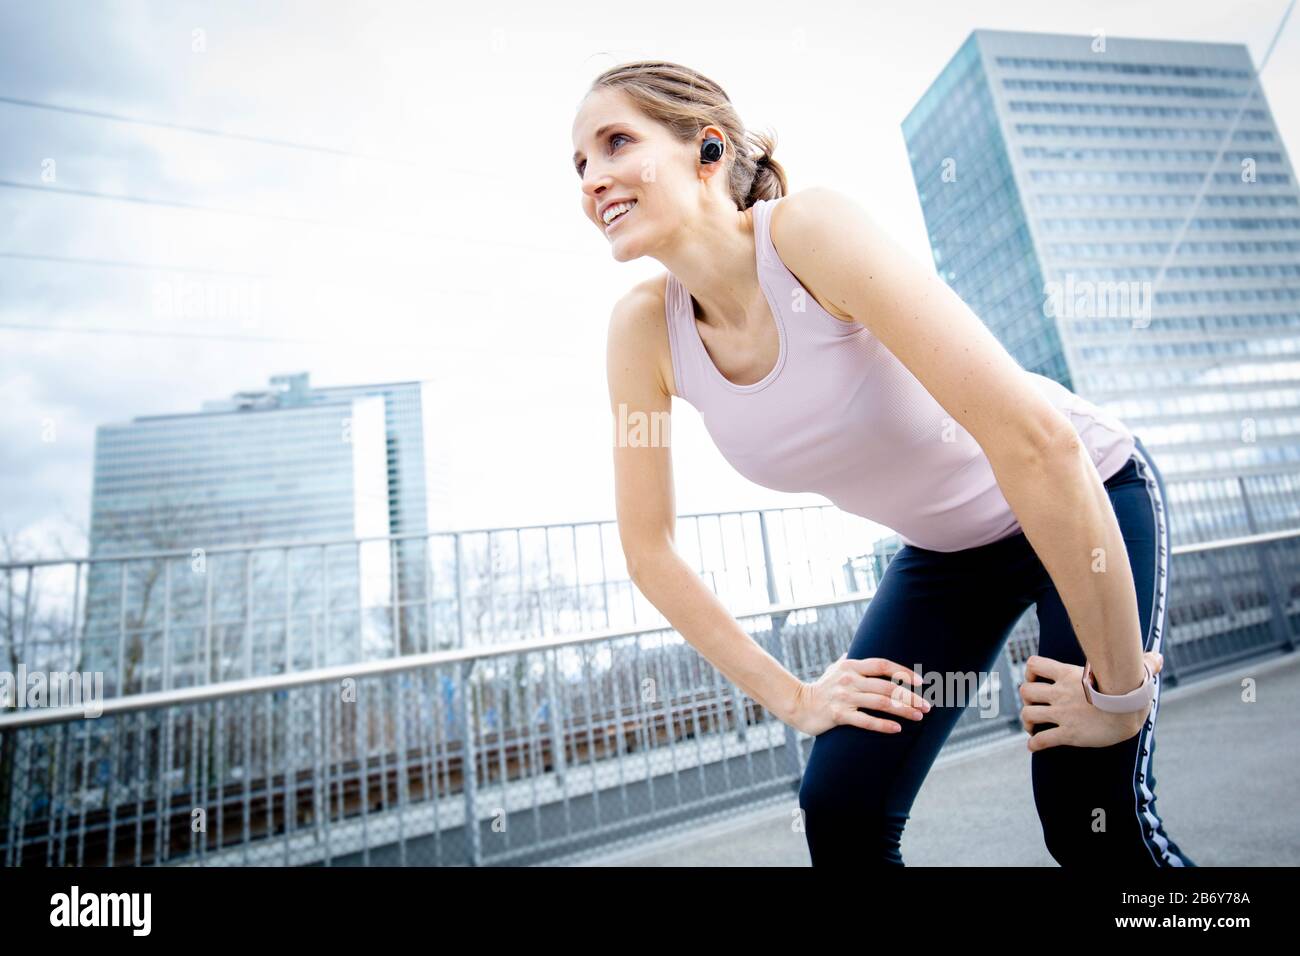 Sportliche Frau fängt ihren Atem nach dem Training. Corredor femenino tomando un descanso durante su jogging. Mujer atleta relajante después del entrenamiento Foto de stock